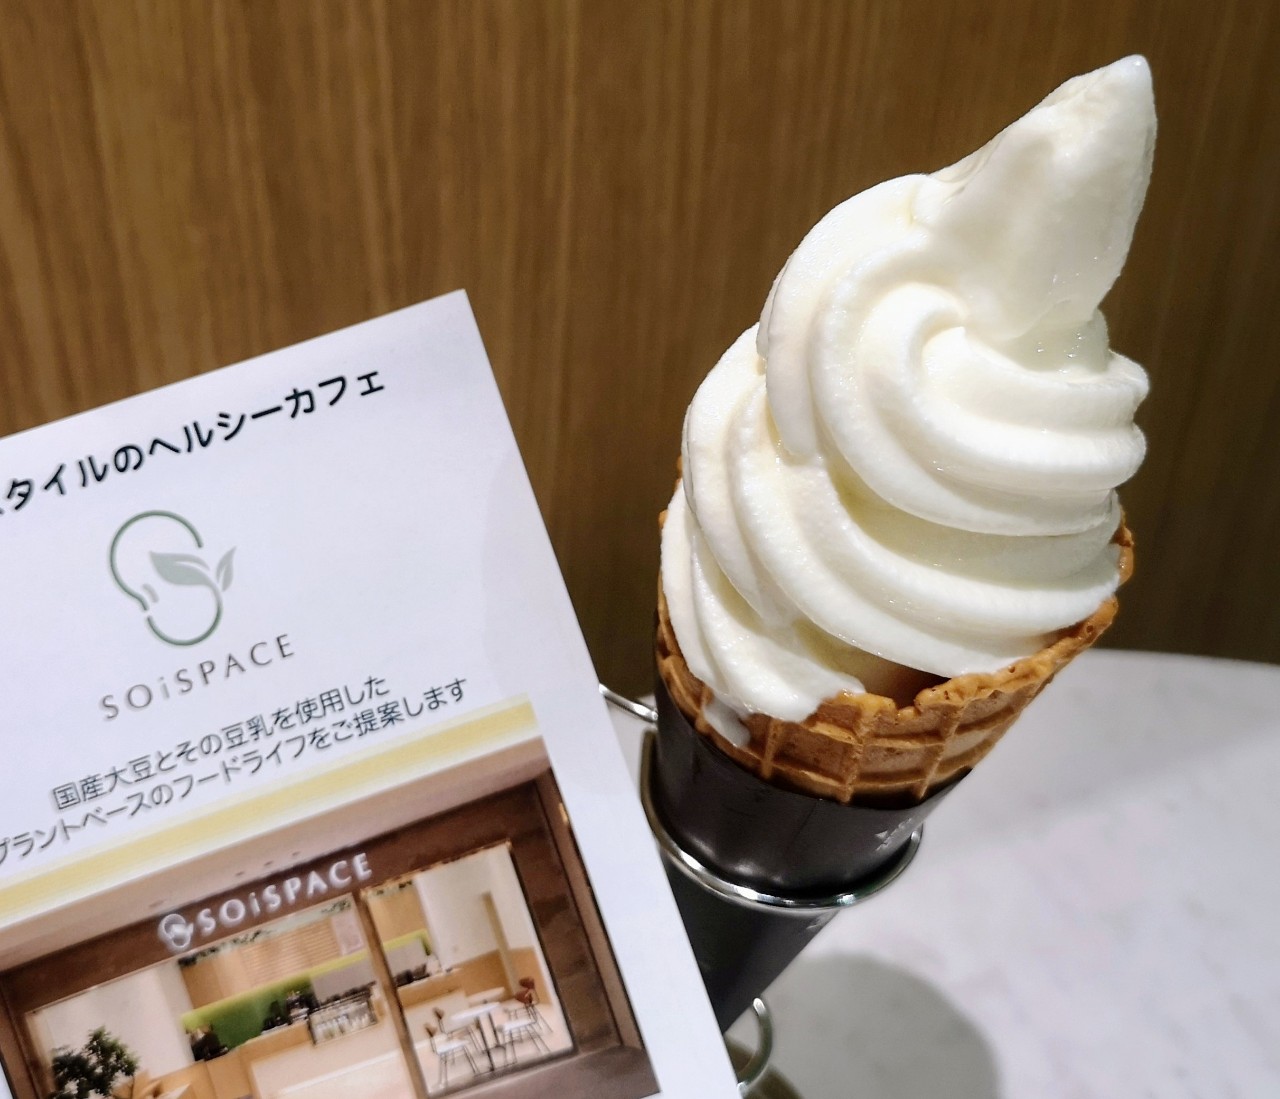 神奈川県横浜市・「SOiSPACE みなとみらい」ソイ・ソフトクリーム2